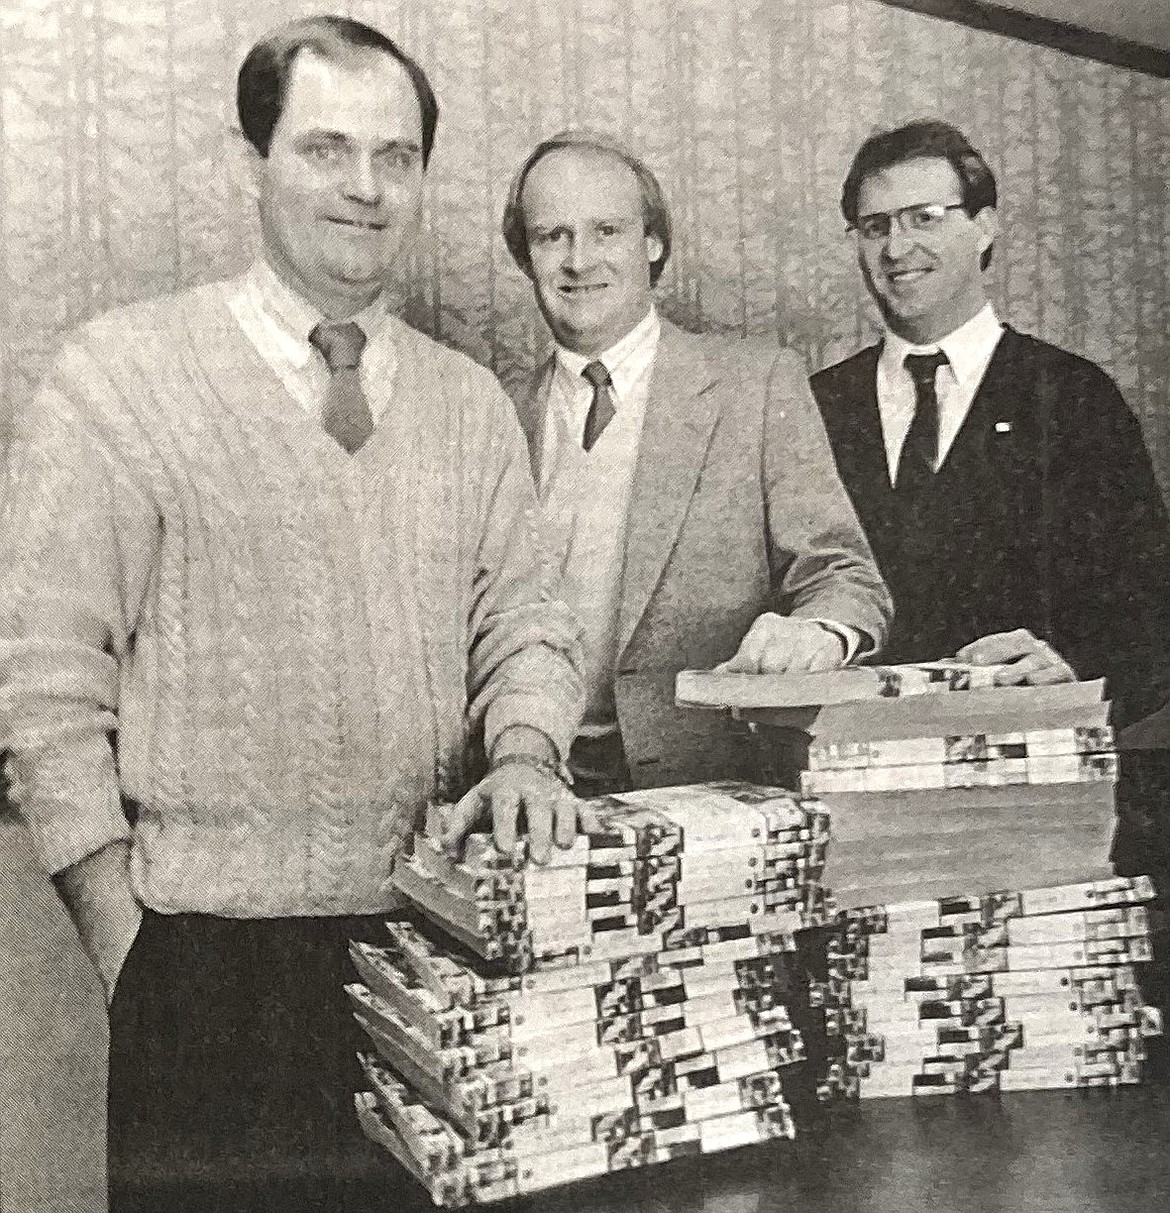 Top Realtors, from left, Bob Liesche, Bill Robinette and John Beutler.